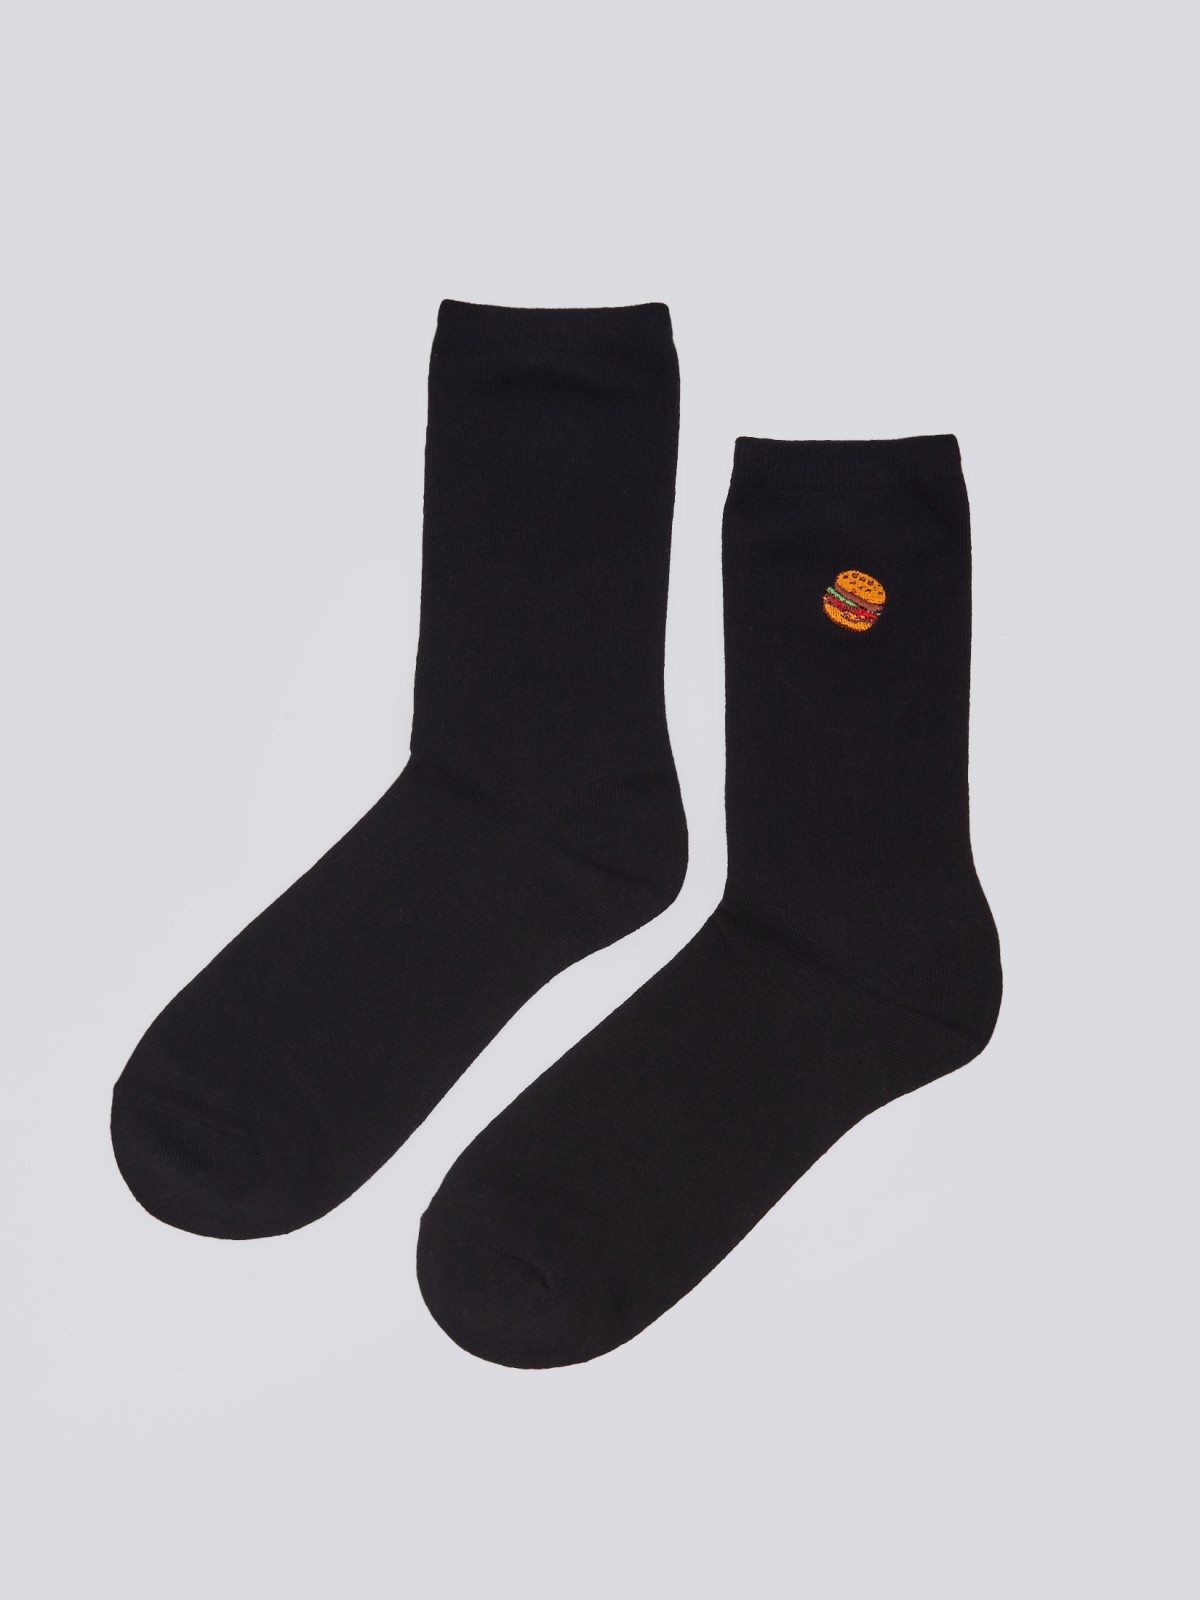 Набор носков (3 пары в комплекте) zolla 01411995P165, цвет черный, размер 25-27 - фото 3